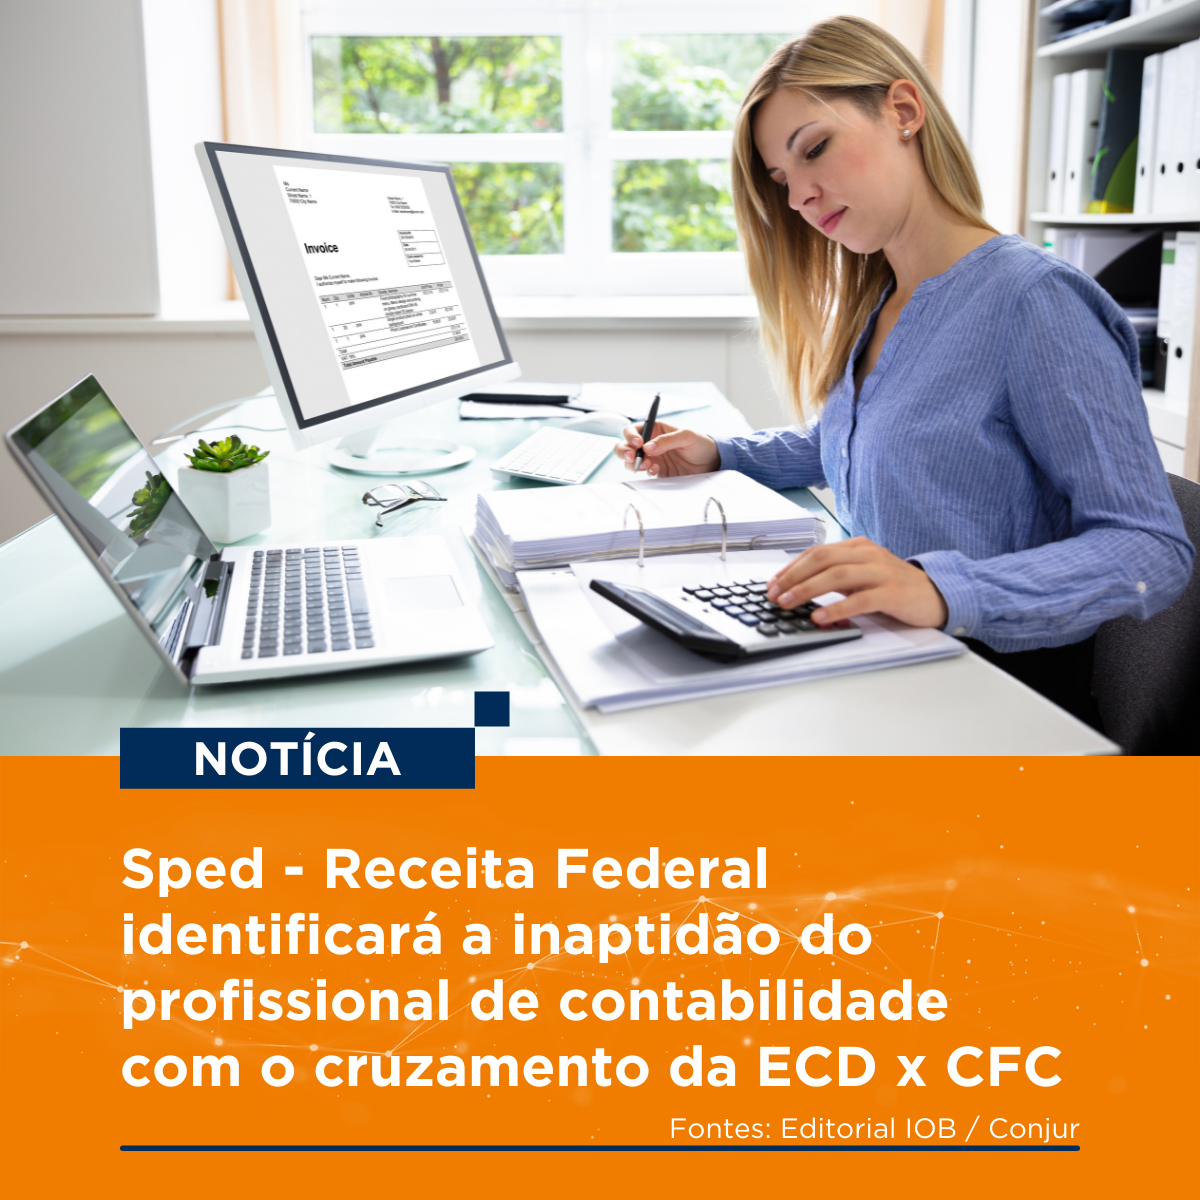 Sped - Receita Federal identificará a inaptidão do profissional de contabilidade com o cruzamento da ECD x CFC